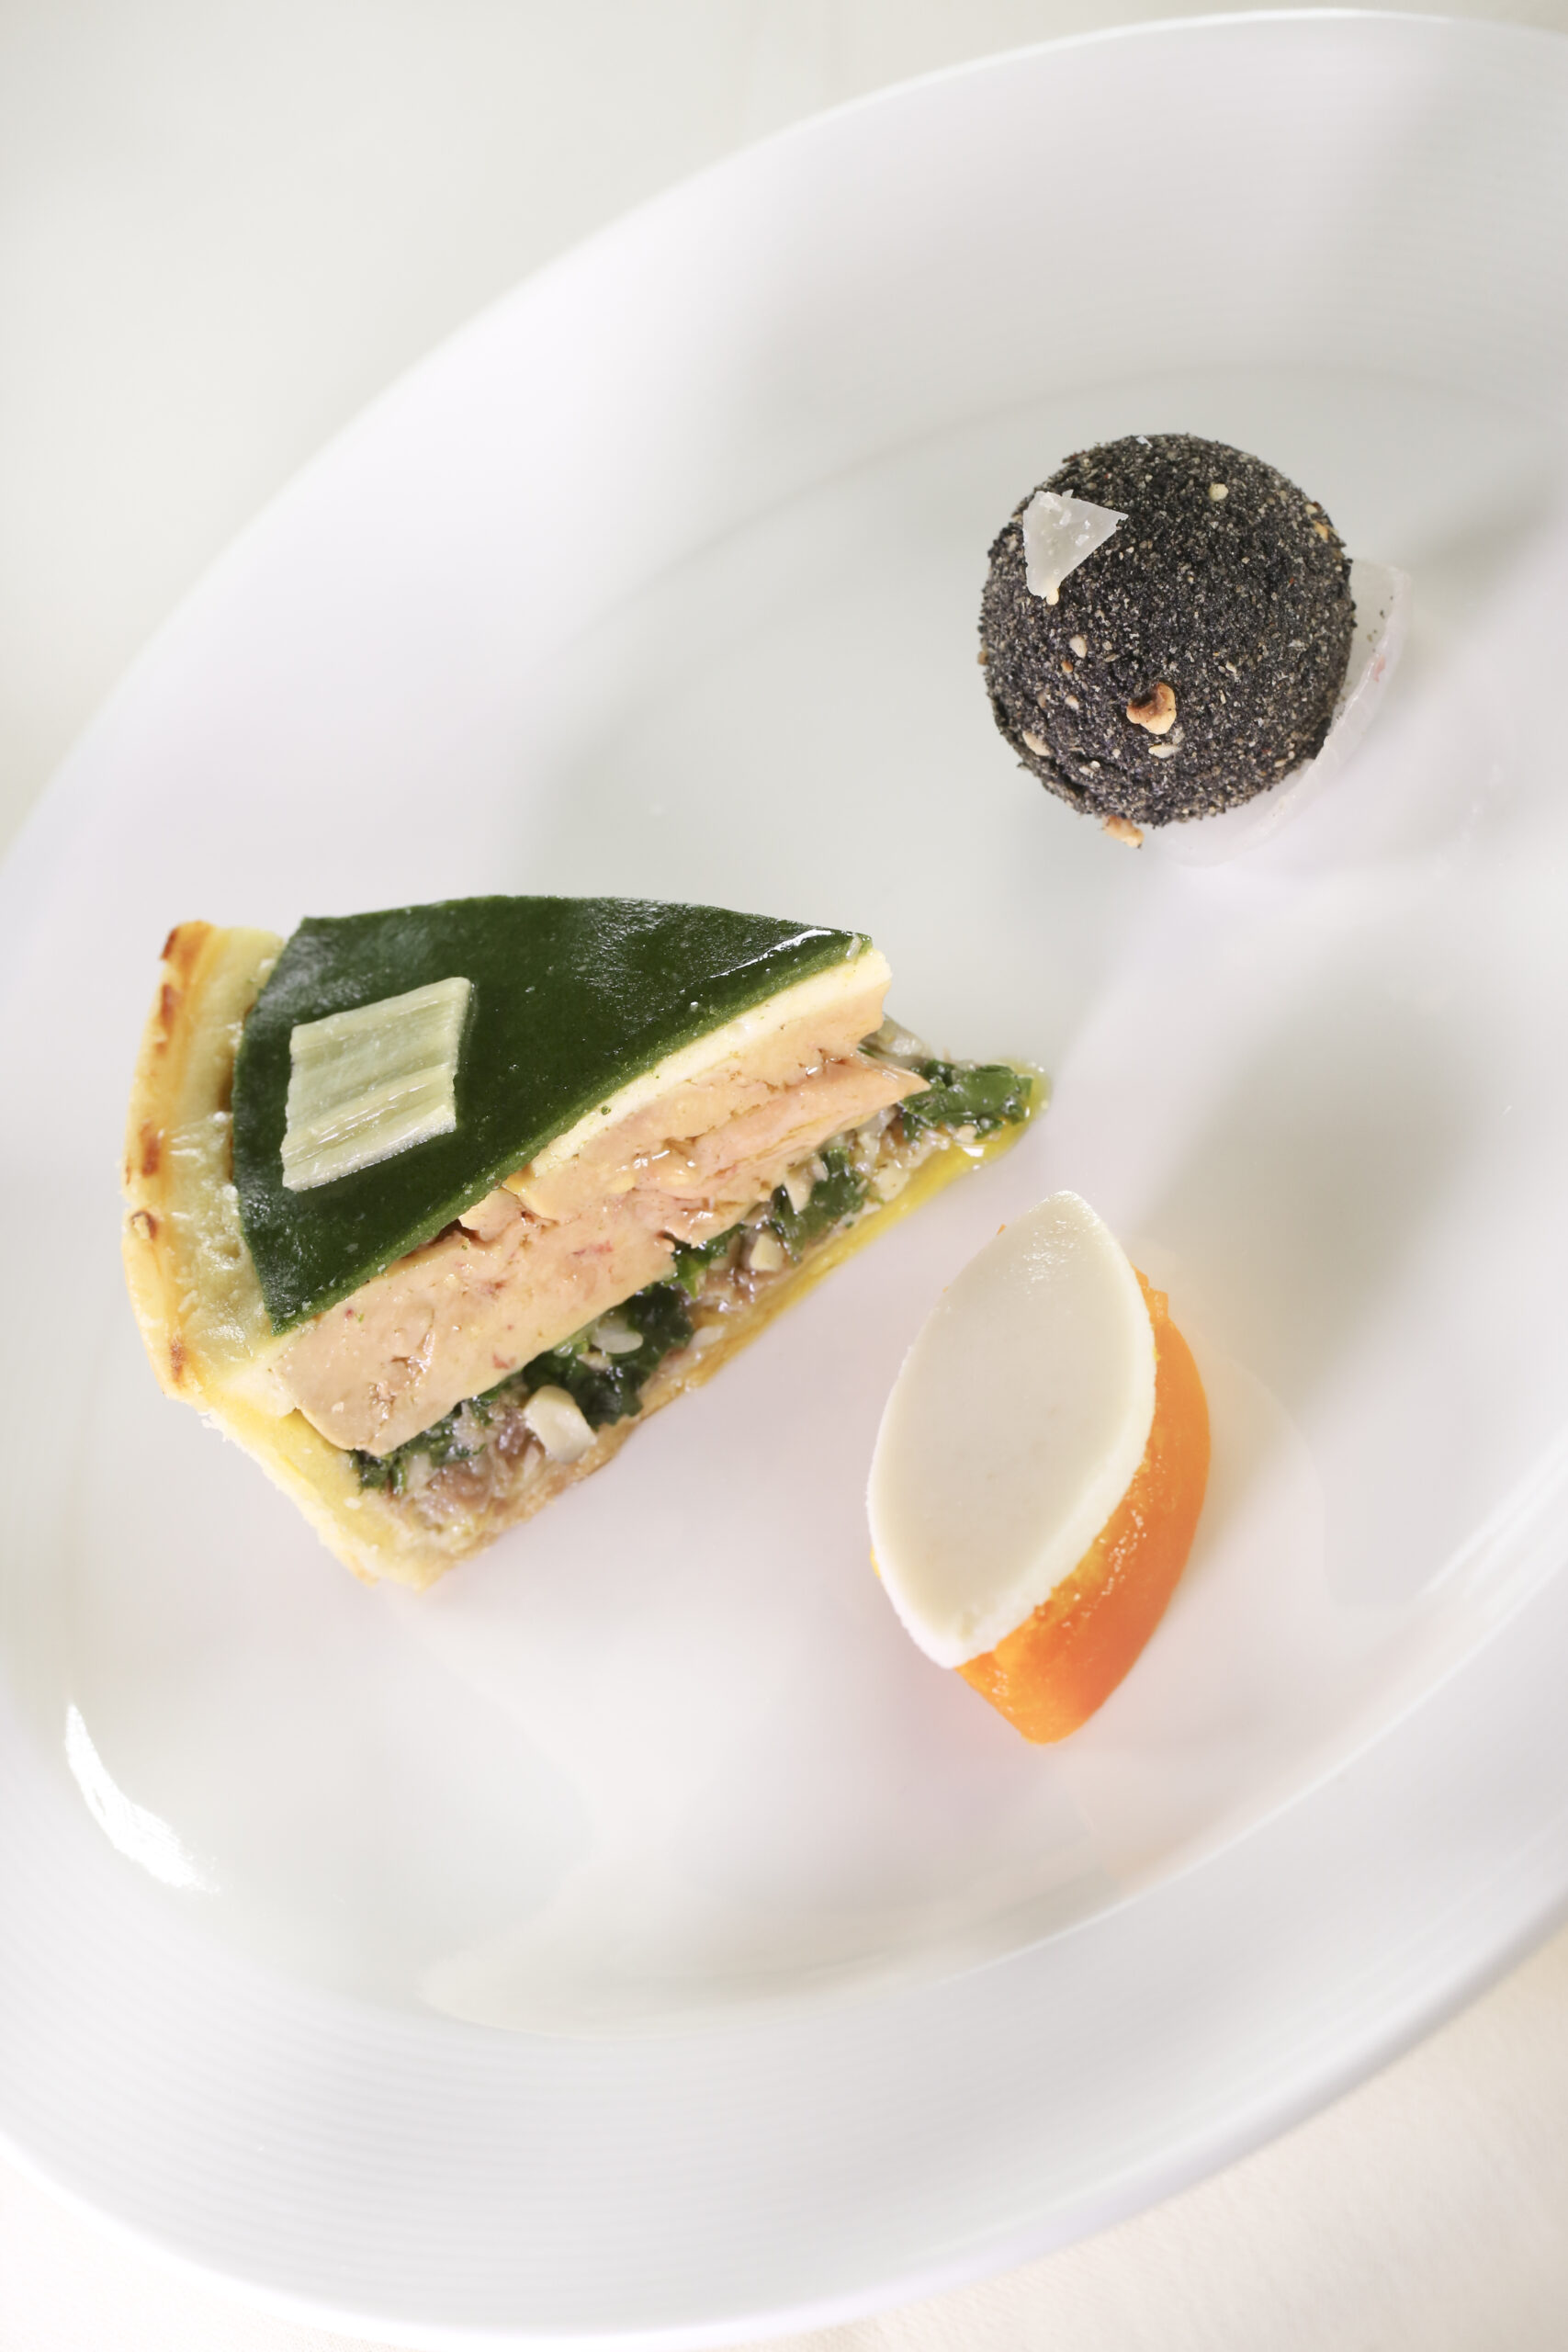 Tourte de cuisses de canard confites, foie gras mariné au vin de Tariquet, blettes braisées et vert de blettes aux échalotes confites